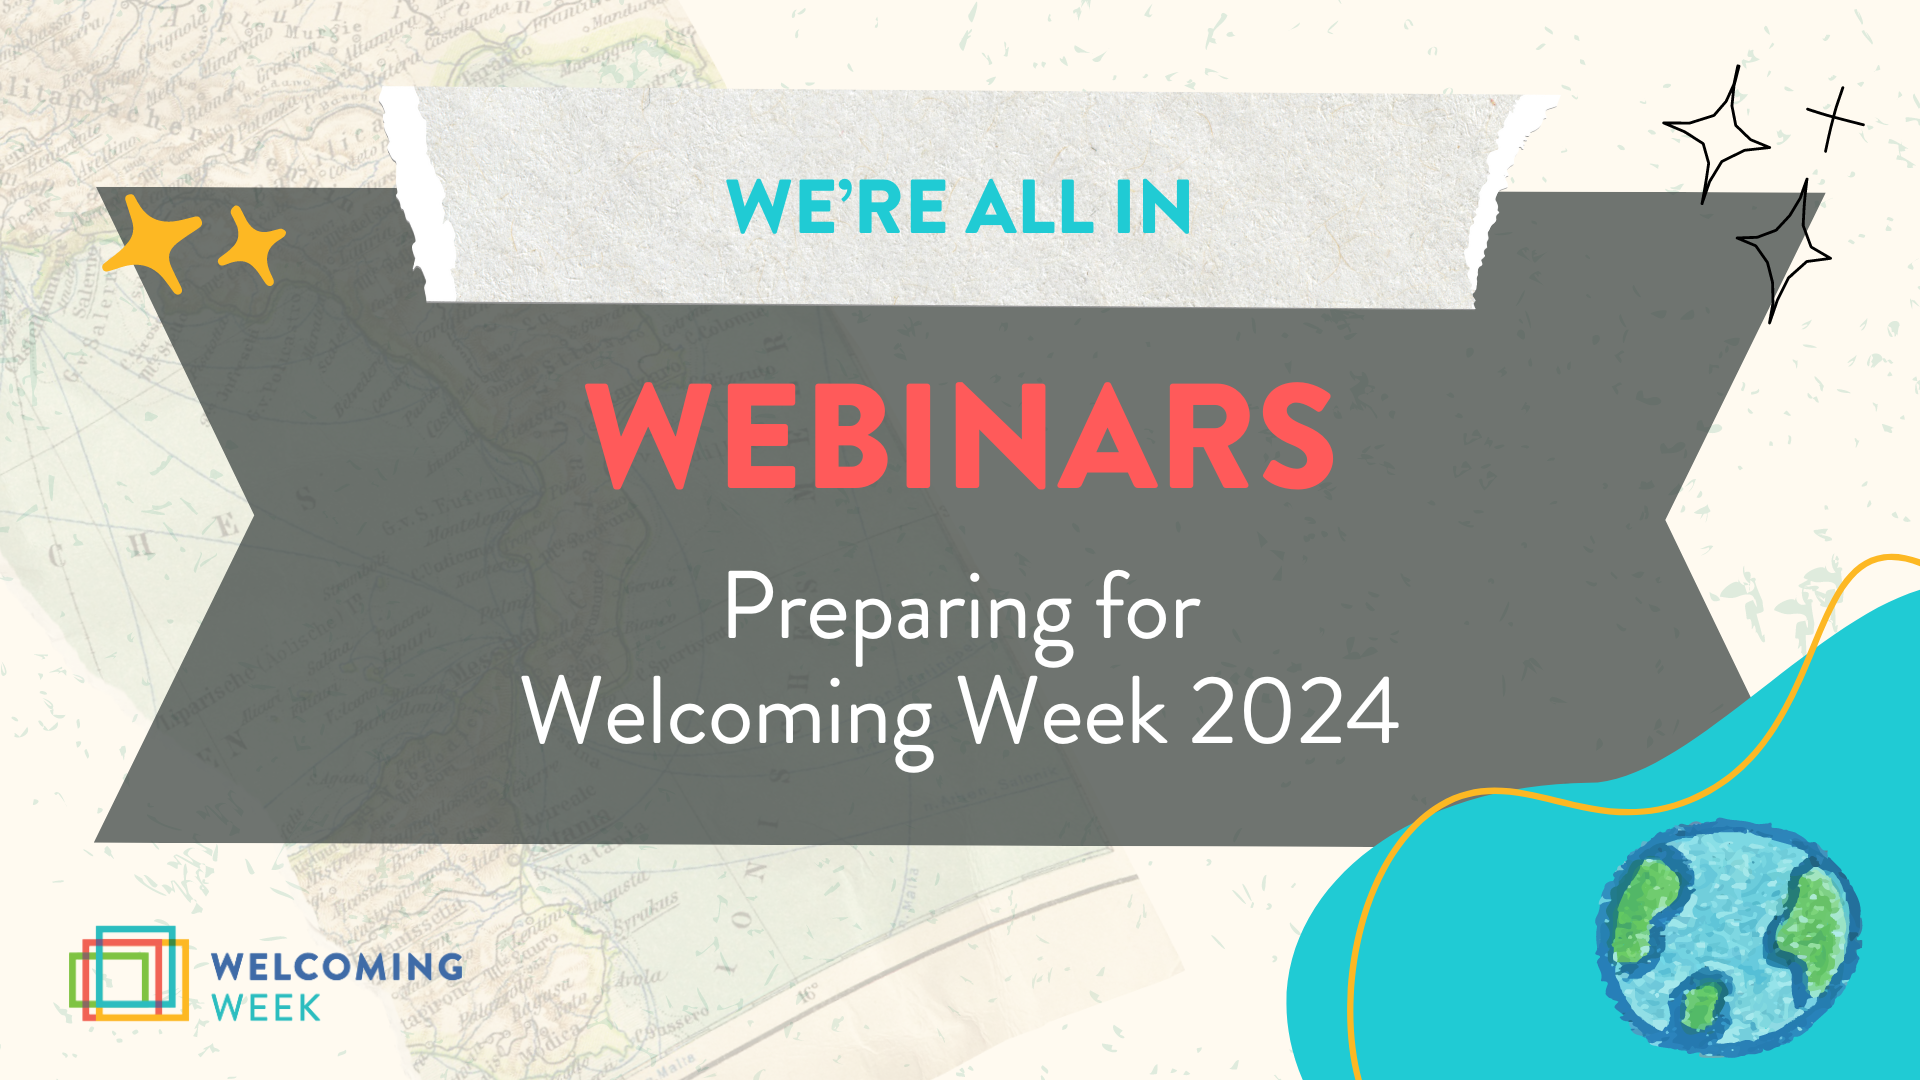 We're All In: Webinars on Preparing for Welcoming Week 2024